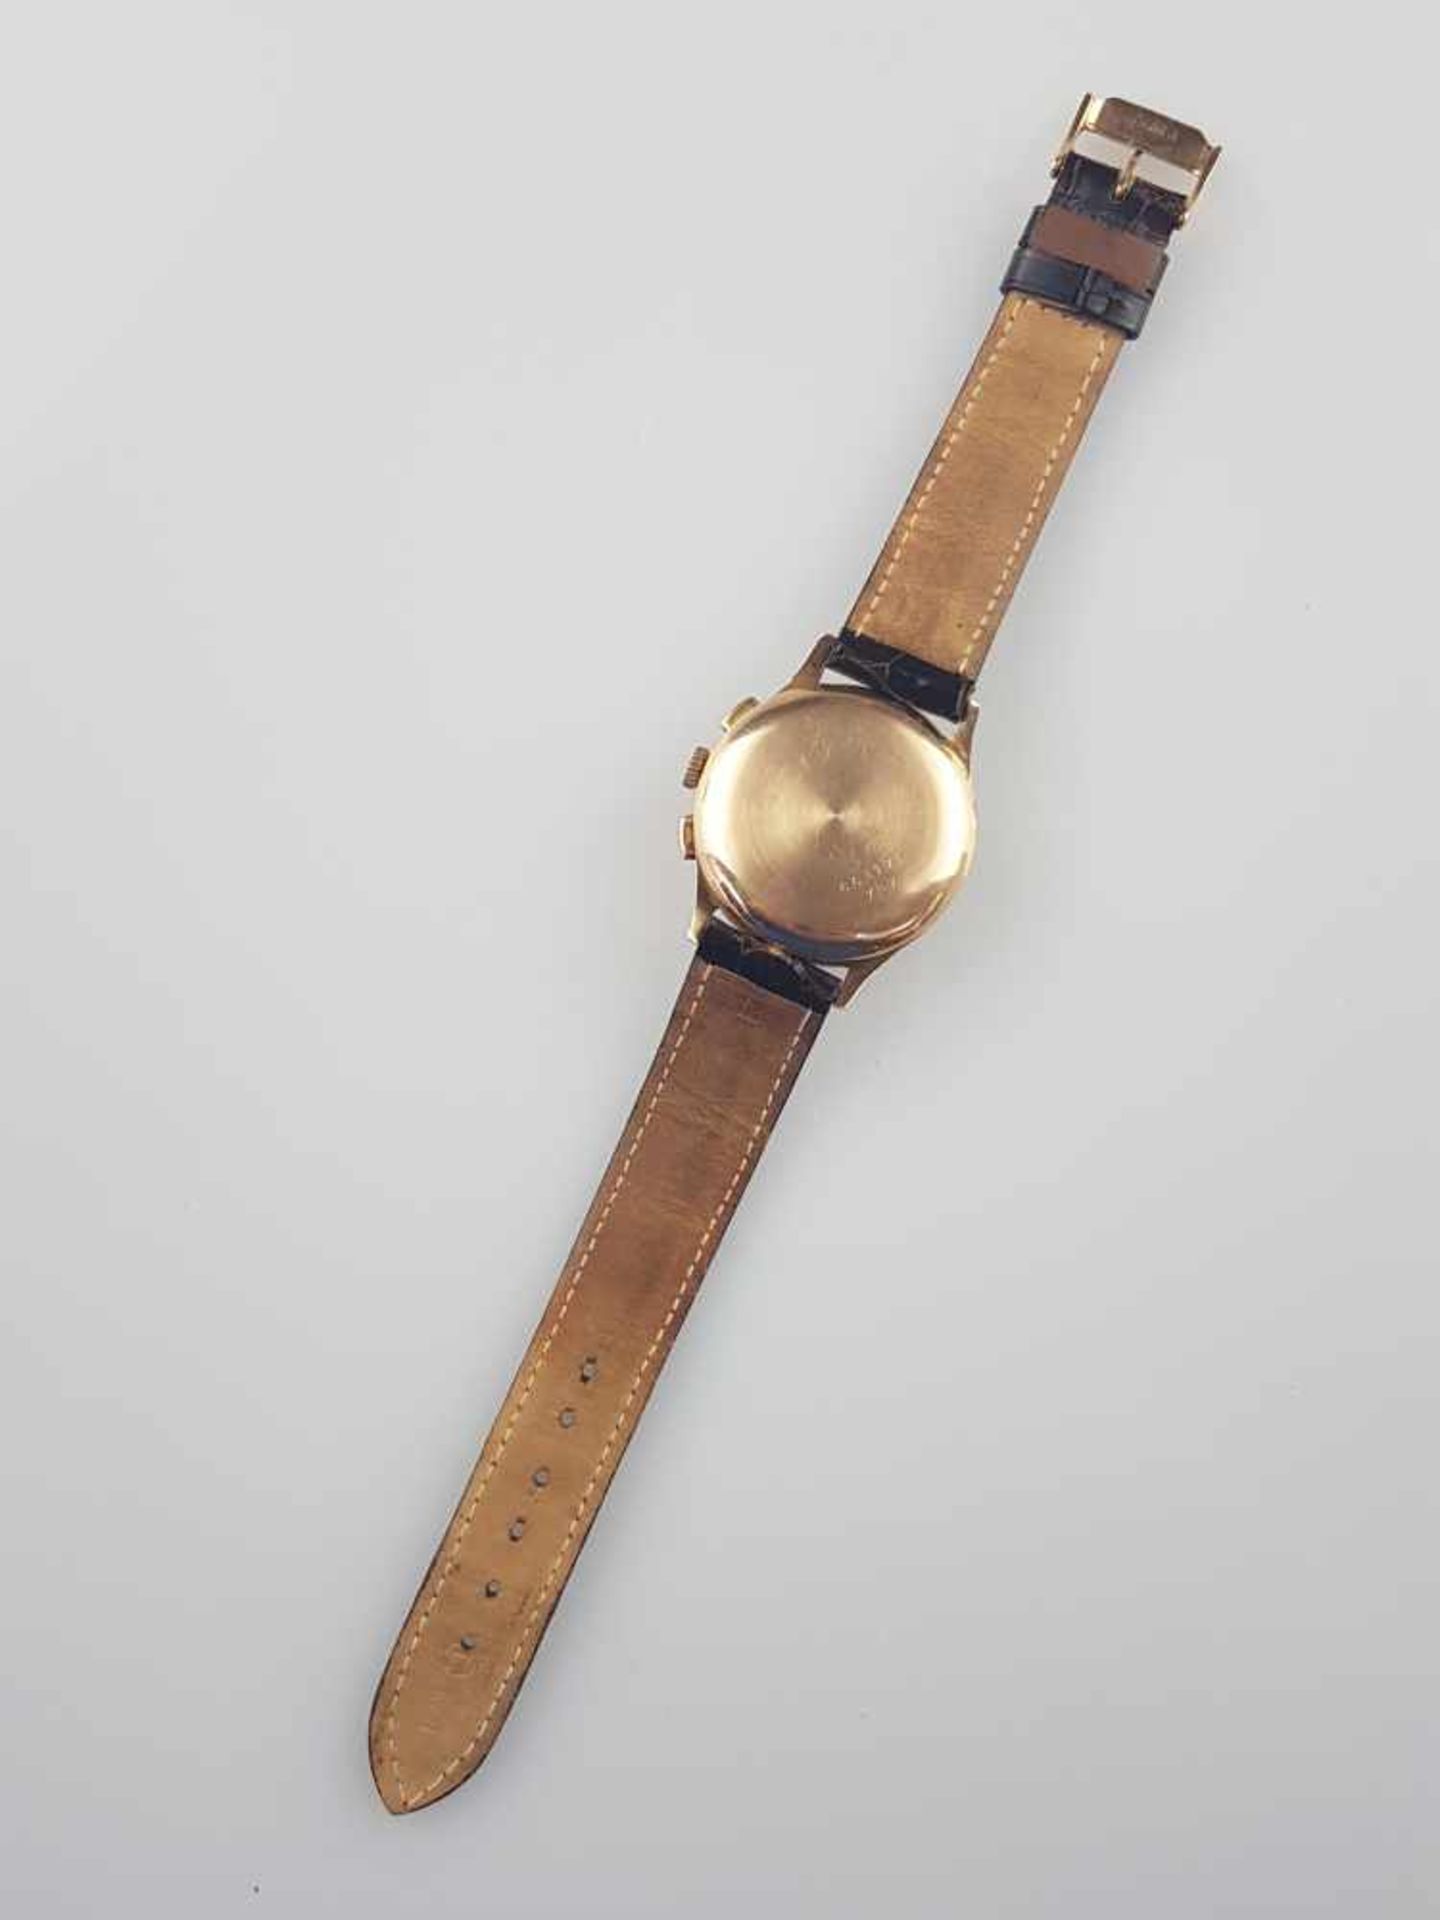 Herrenarmbanduhr - Breitling Schaltrad-Chronograph in Gelbgold 750/000, 1940-50er Jahre, Gehäuse, - Bild 4 aus 7